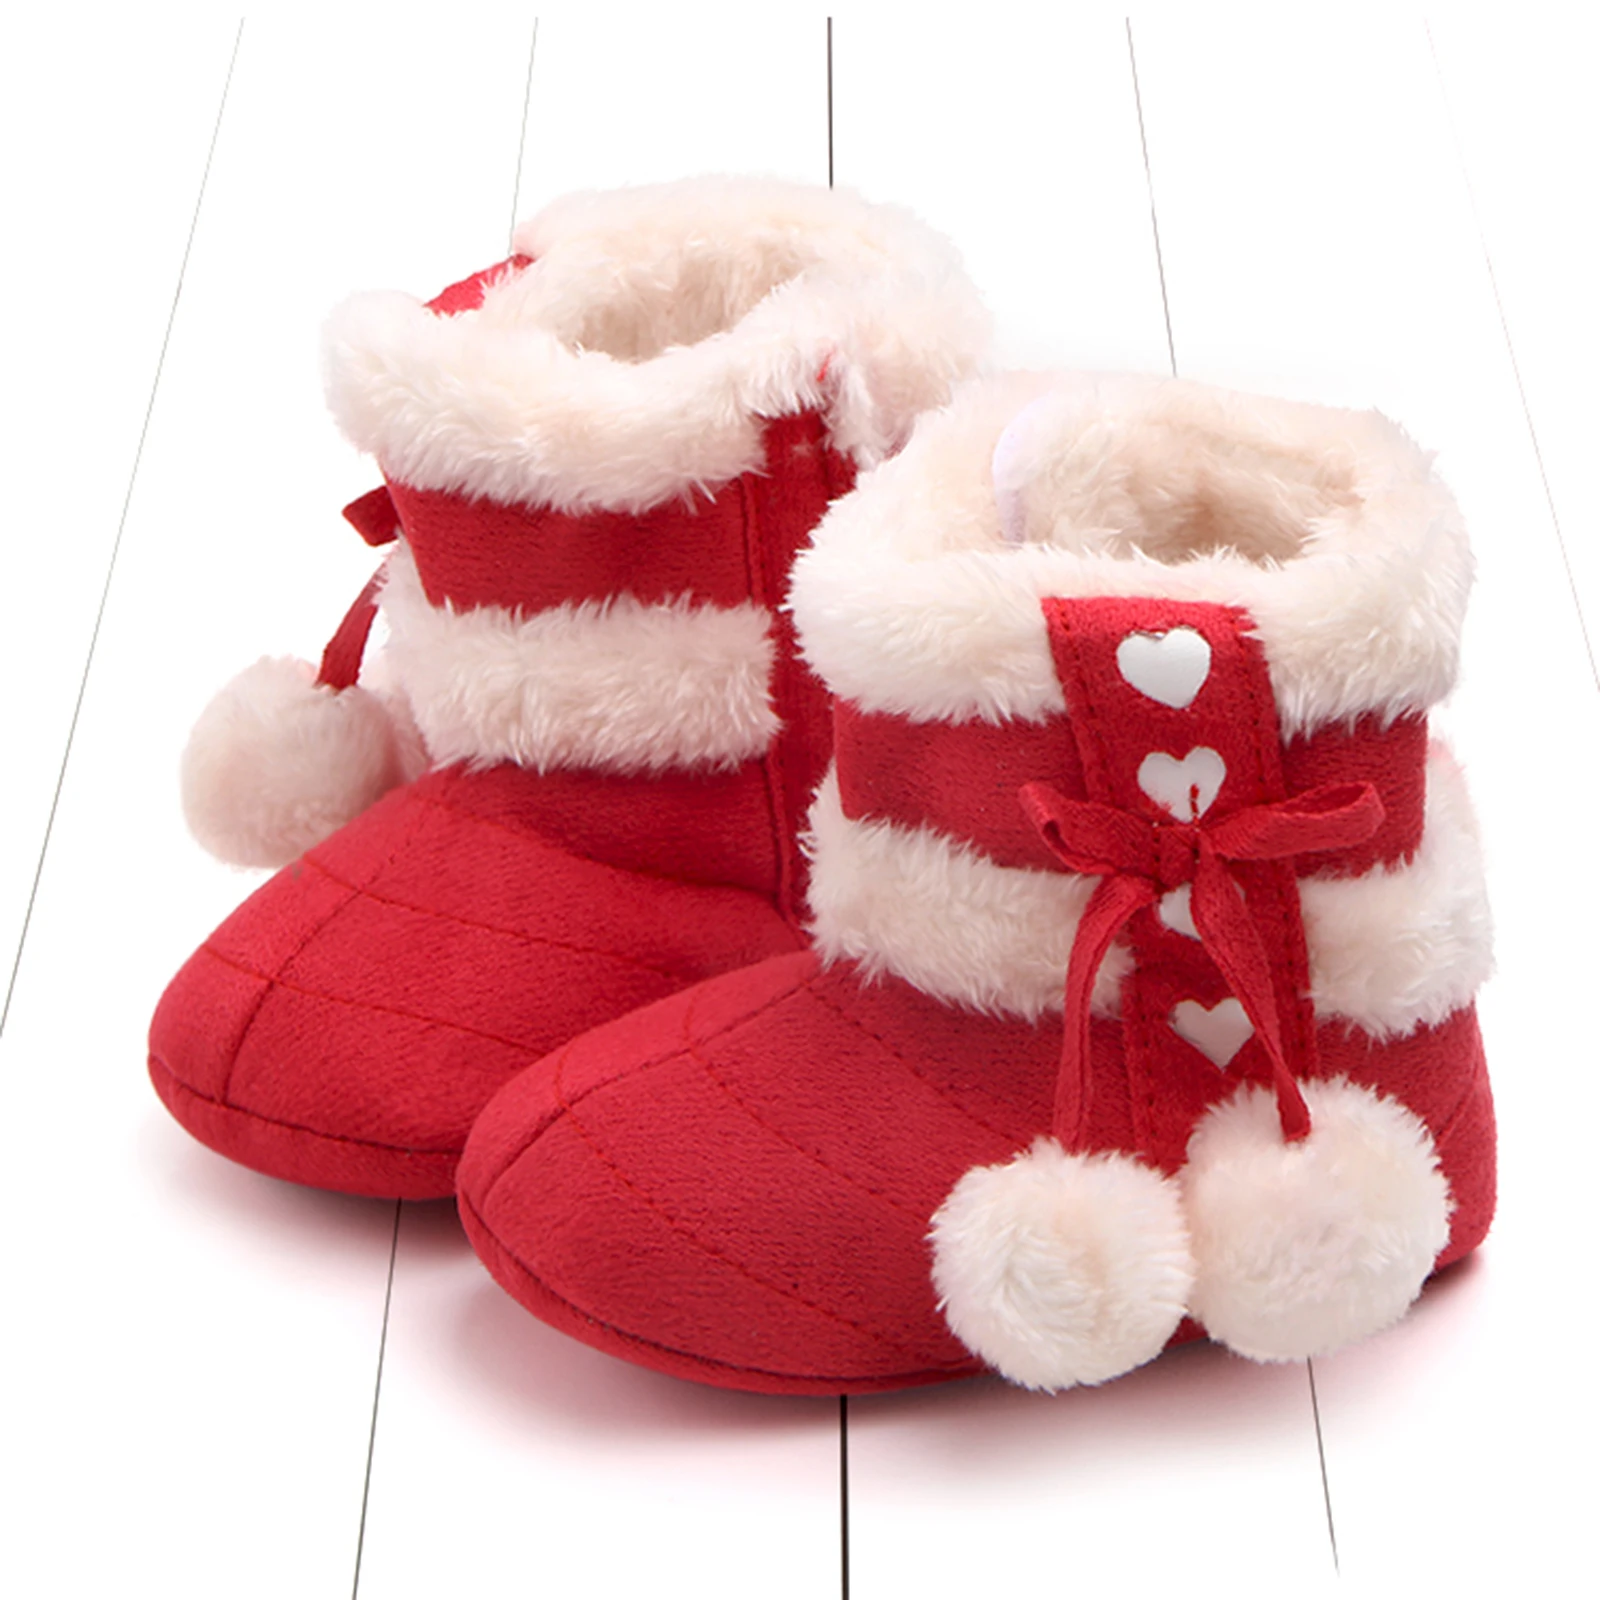 Botas de invierno para niñas recién nacidas, zapatos de nieve con pompones de felpa con lazo lindo, zapatos cálidos para caminar para bebés pequeños